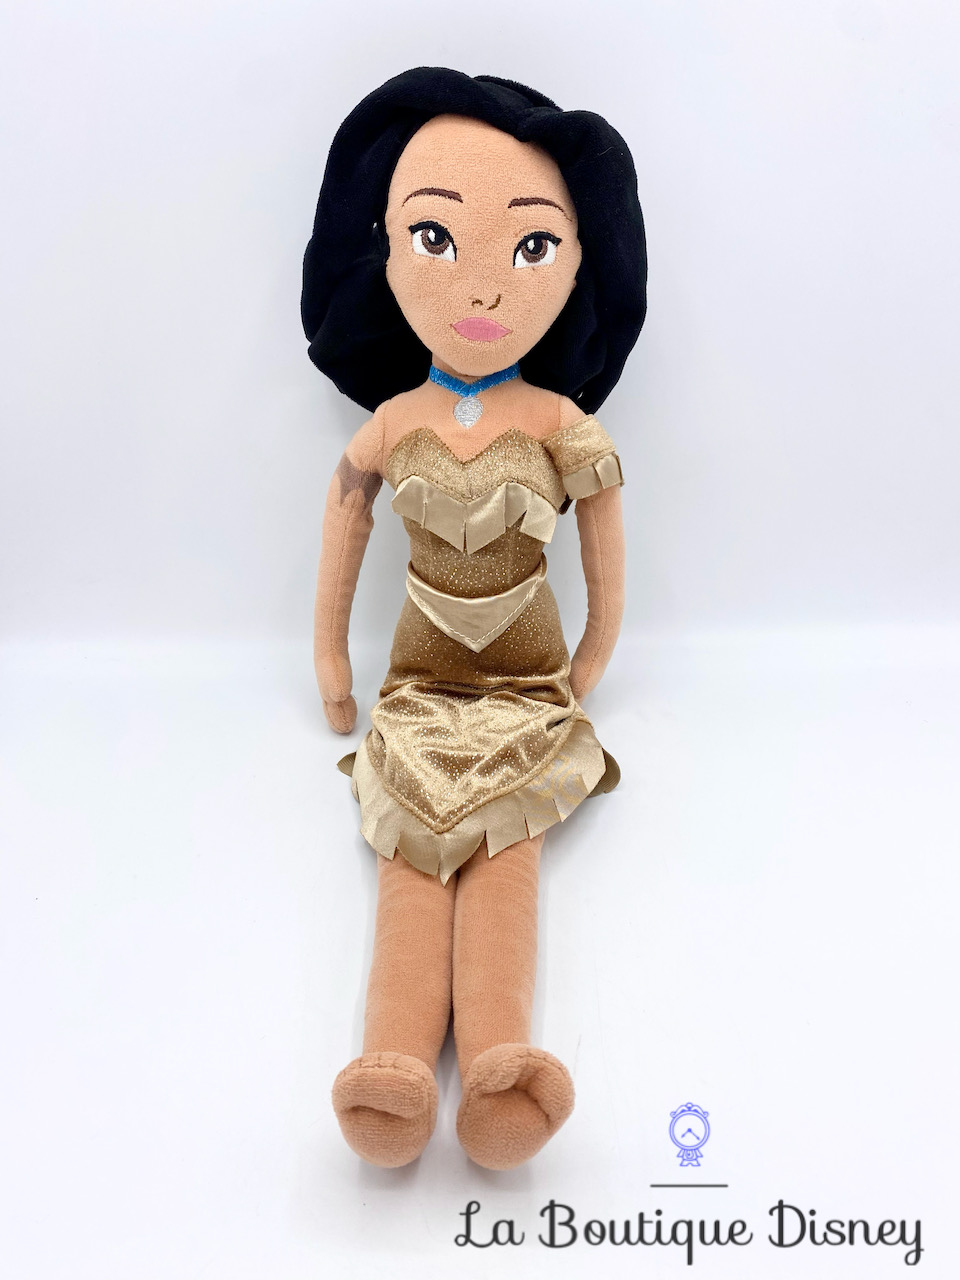 Poupée chiffon Pocahontas Disney Store Disney Parks peluche princesse indienne 50 cm